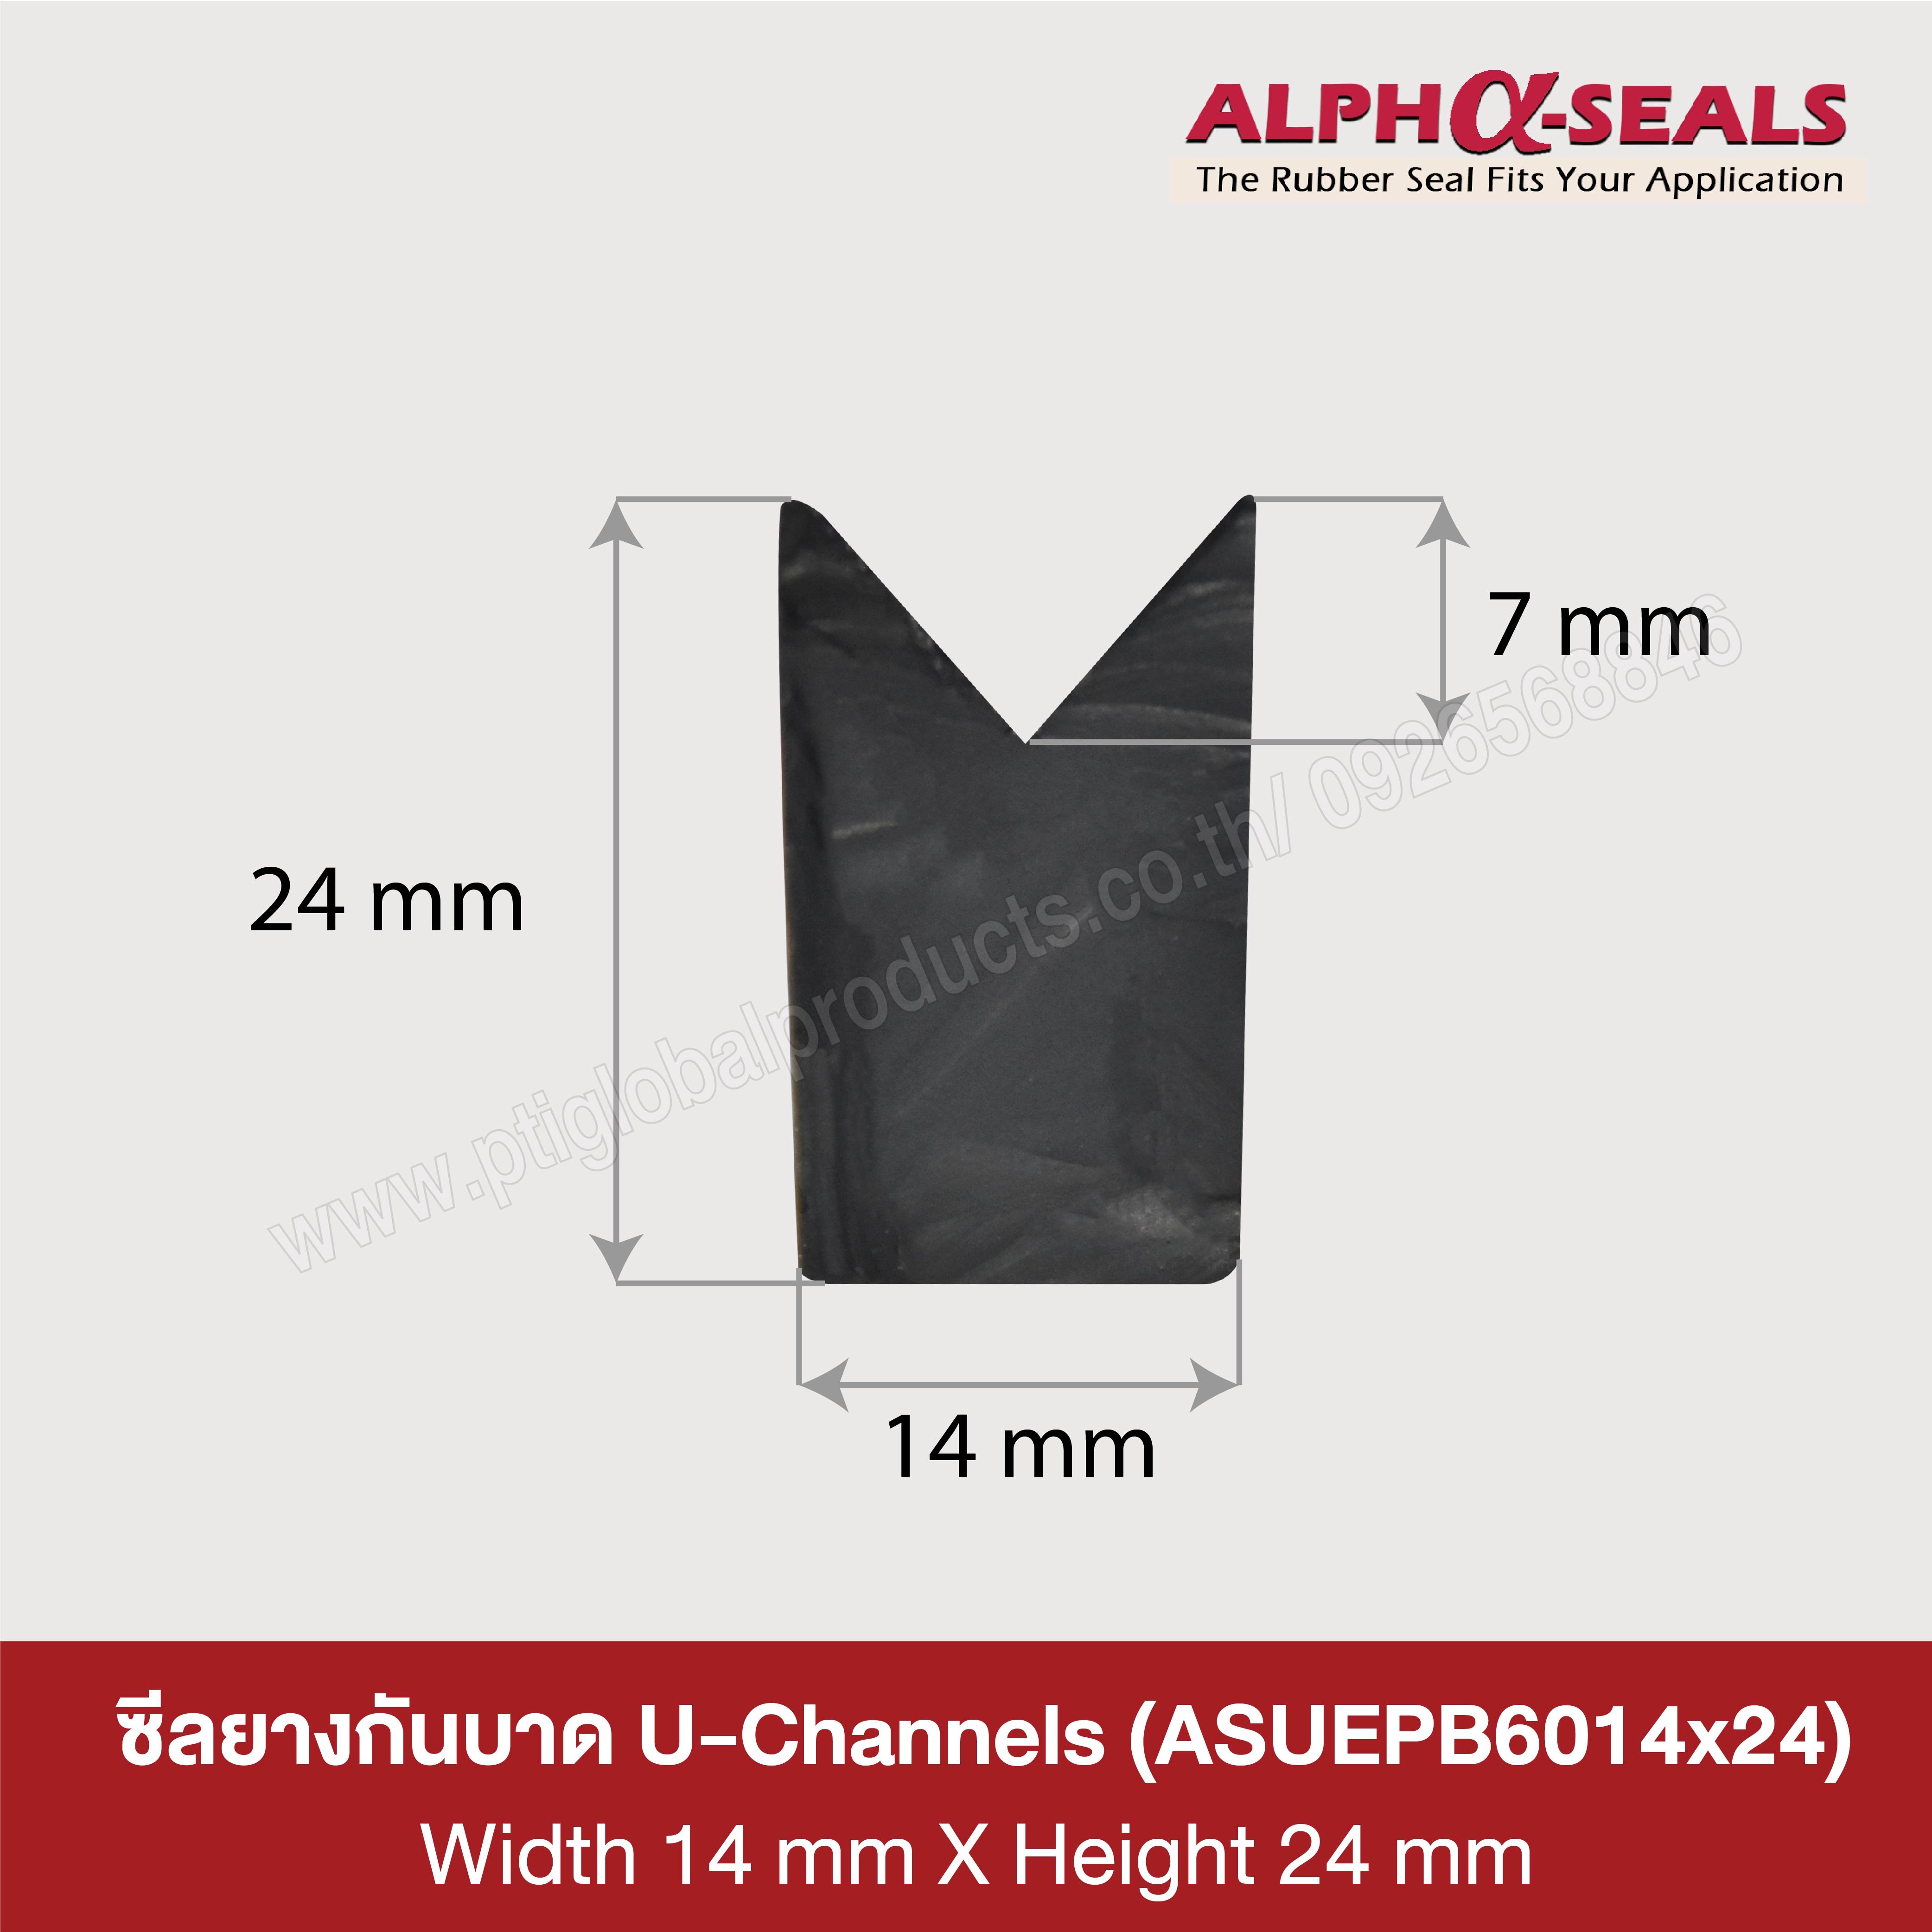 U-Channels rubber seal 14x24 mm